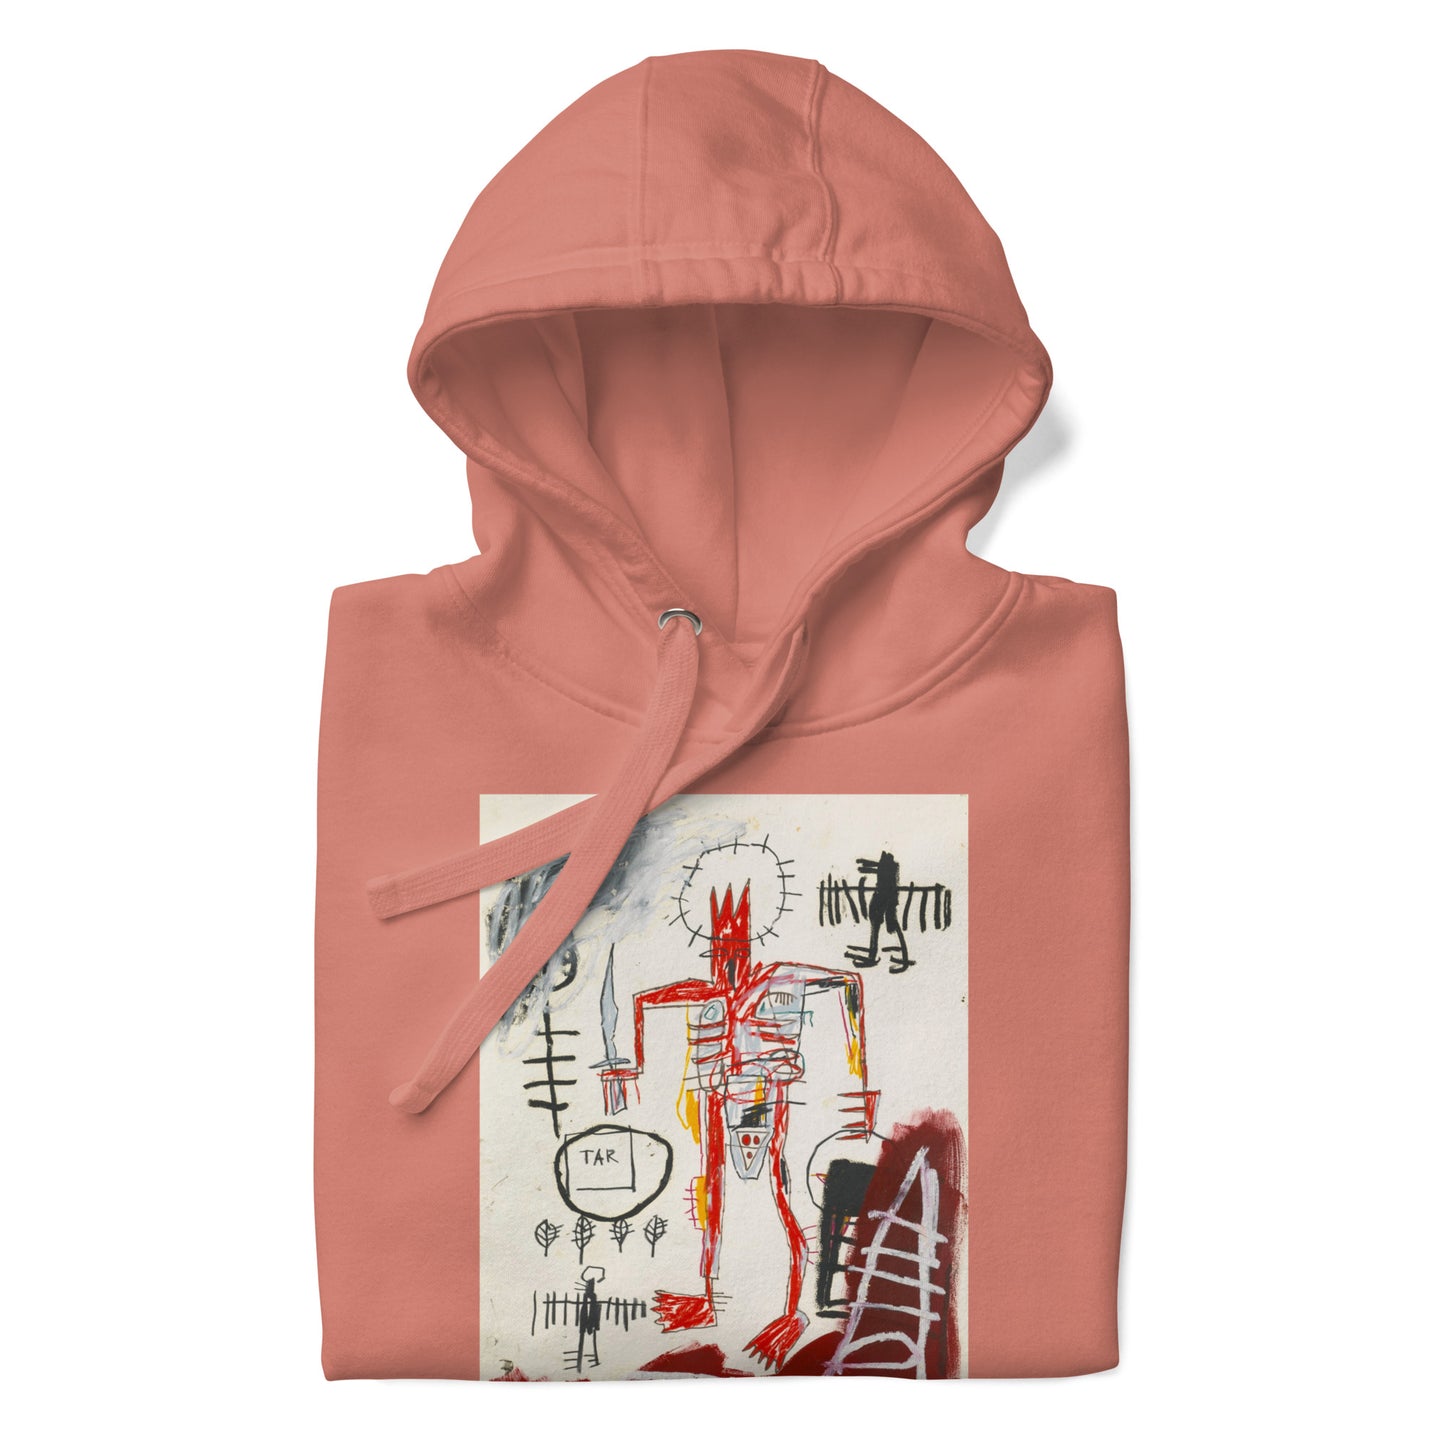 Jean-Michel Basquiat "Untitled" Artwork Printed Premium Streetwear Sweatshirt Hoodie Salmon Pink